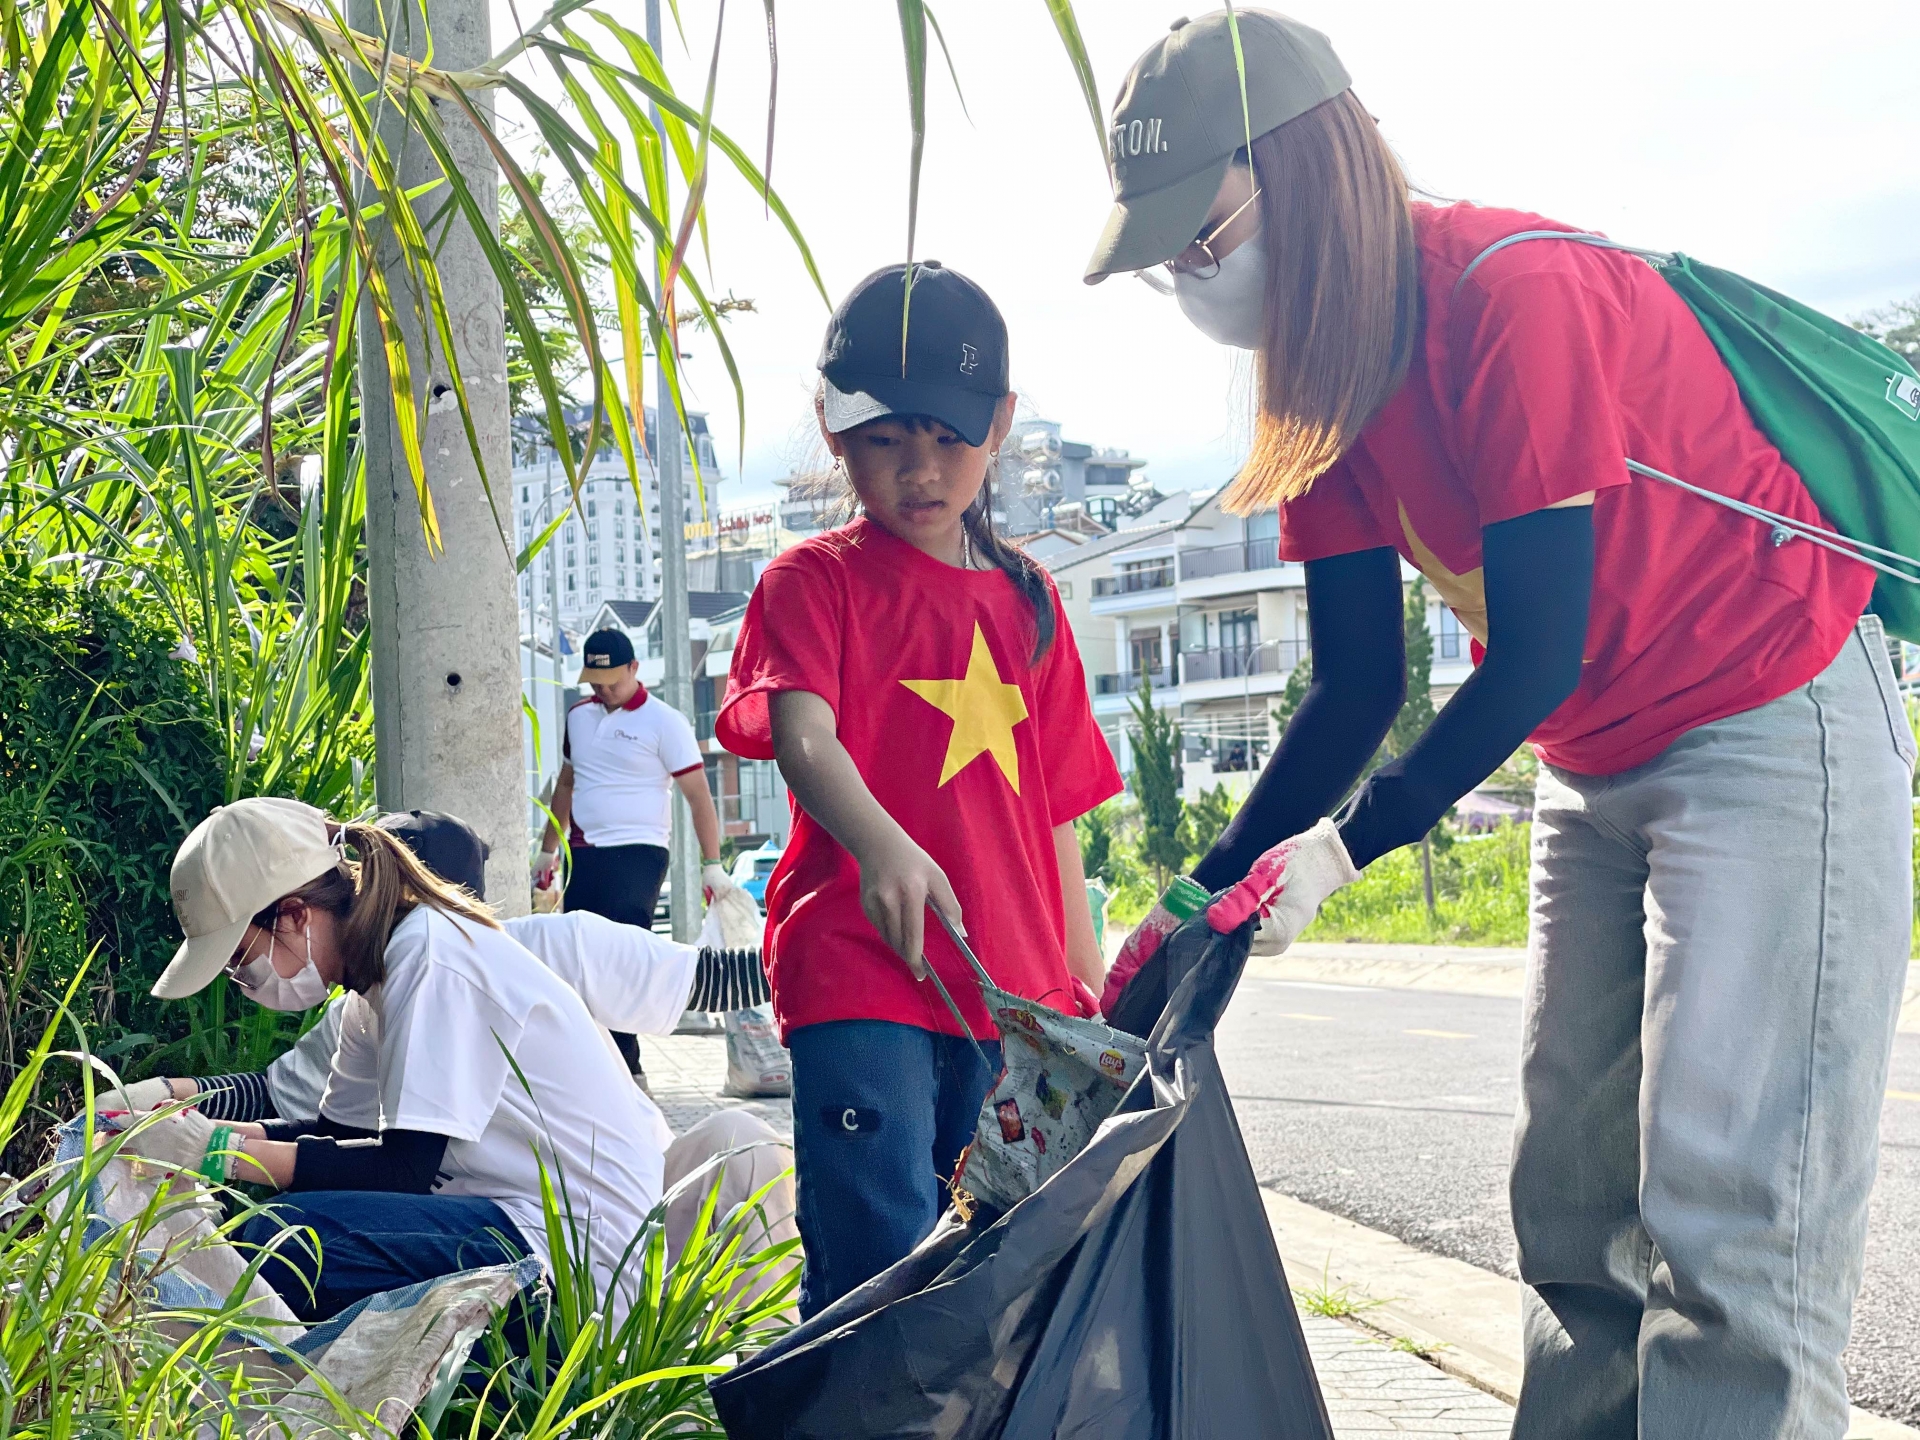 Nhiều trẻ em được bố mẹ đưa đi tham gia chiến dịch gom rác góp phần giúp thành phố Đà Lạt xanh, sạch, đẹp